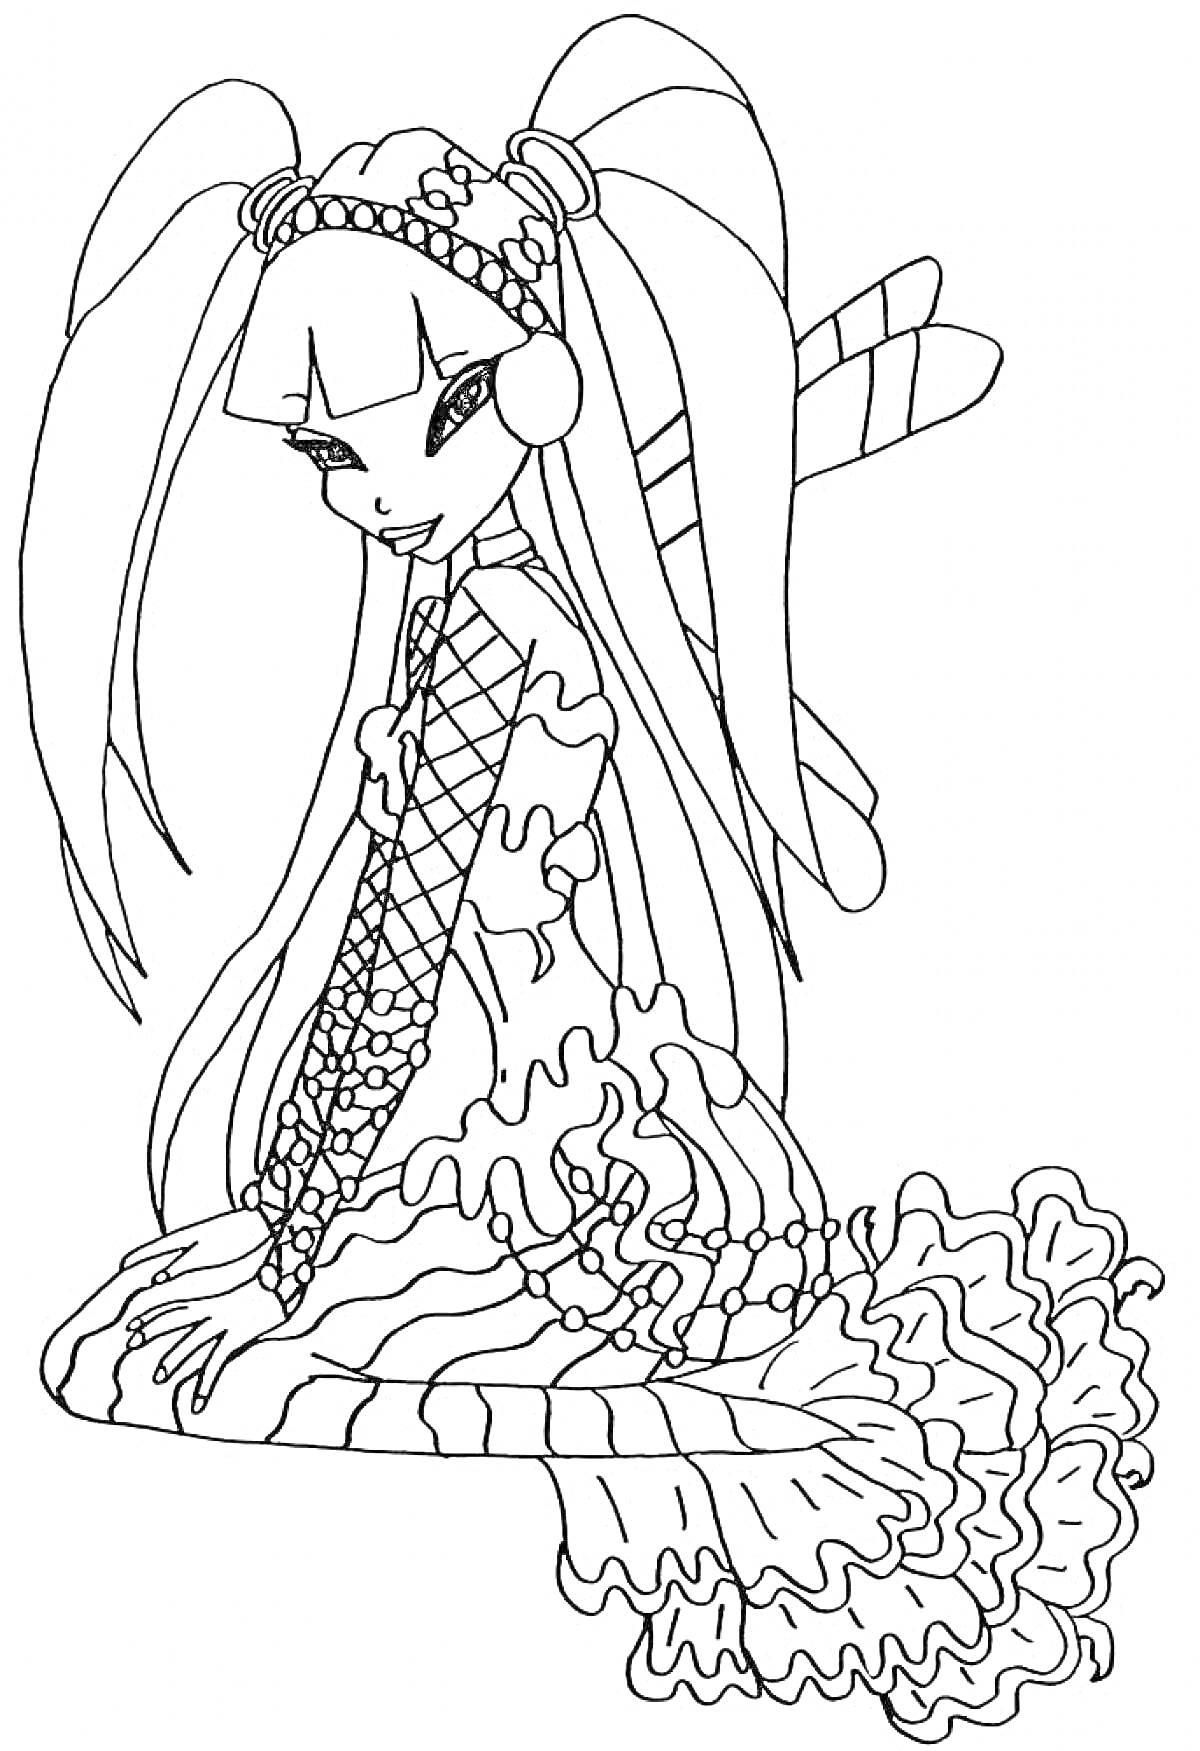 Раскраска Русалка Винкс с длинными волосами, украшенными бусинами, ракушками и большими бантами, в наряде с волнистой юбкой